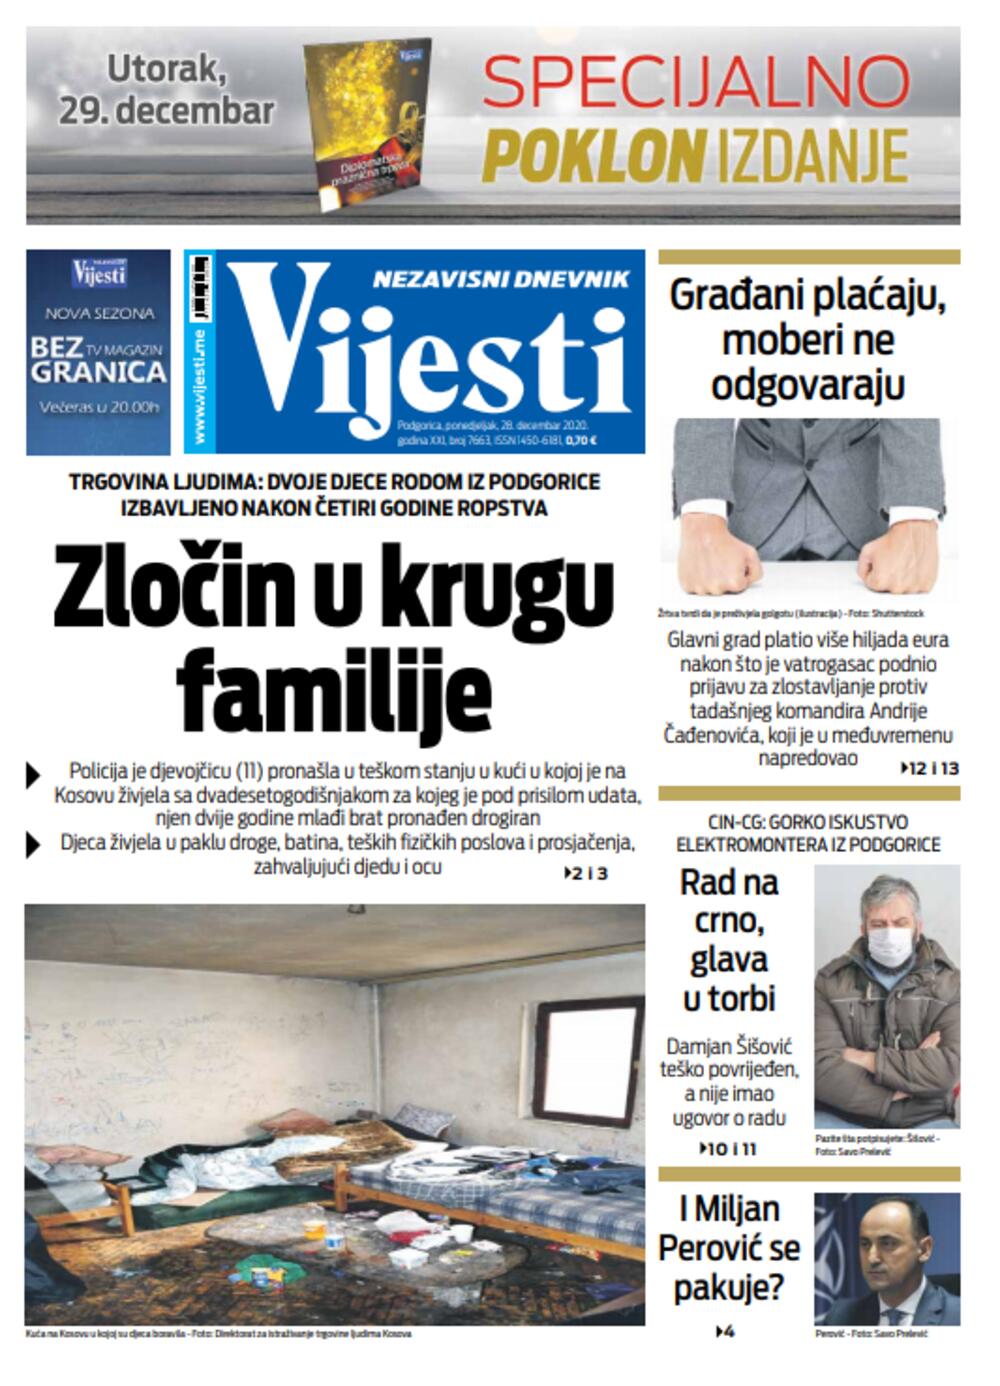 Naslovna strana "Vijesti" za 28. decembar 2020., Foto: Vijesti